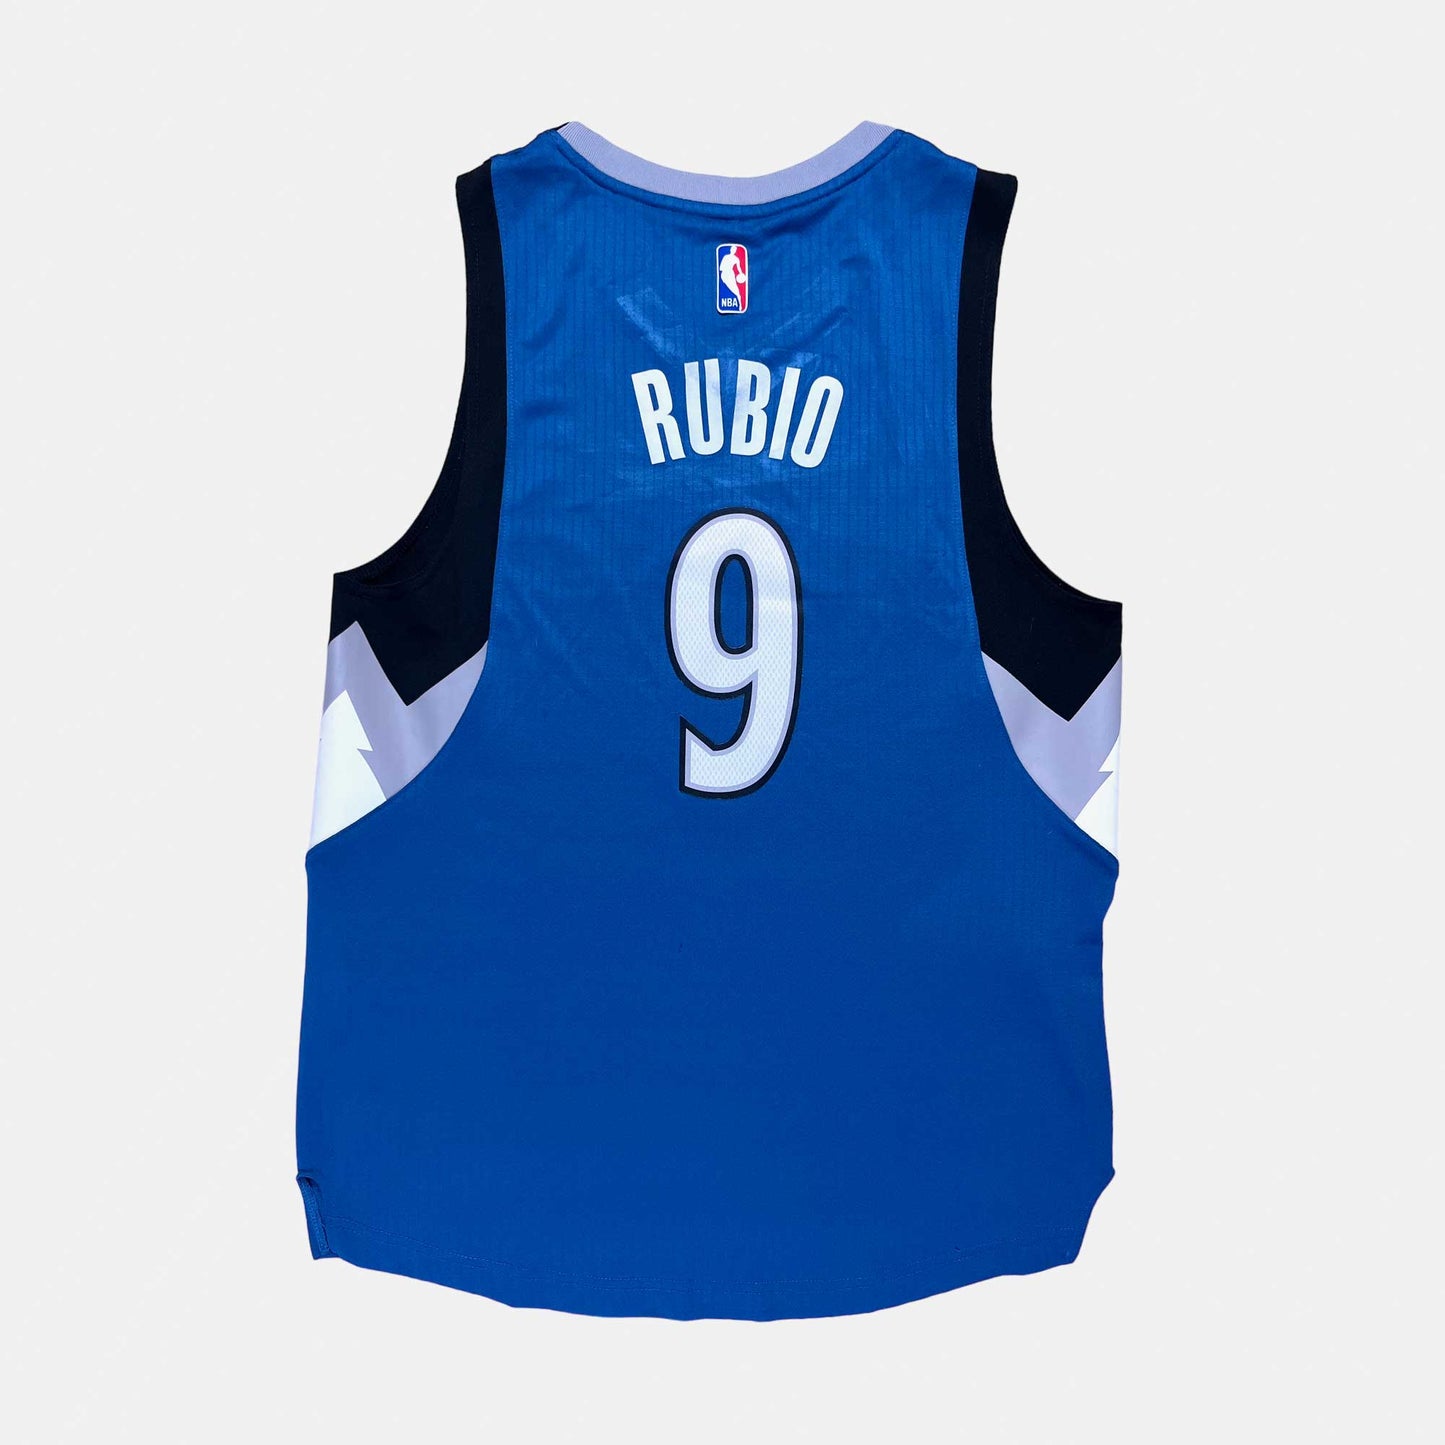 Minnesota Timberwolves - Ricky Rubio - Größe M - Adidas - NBA Trikot